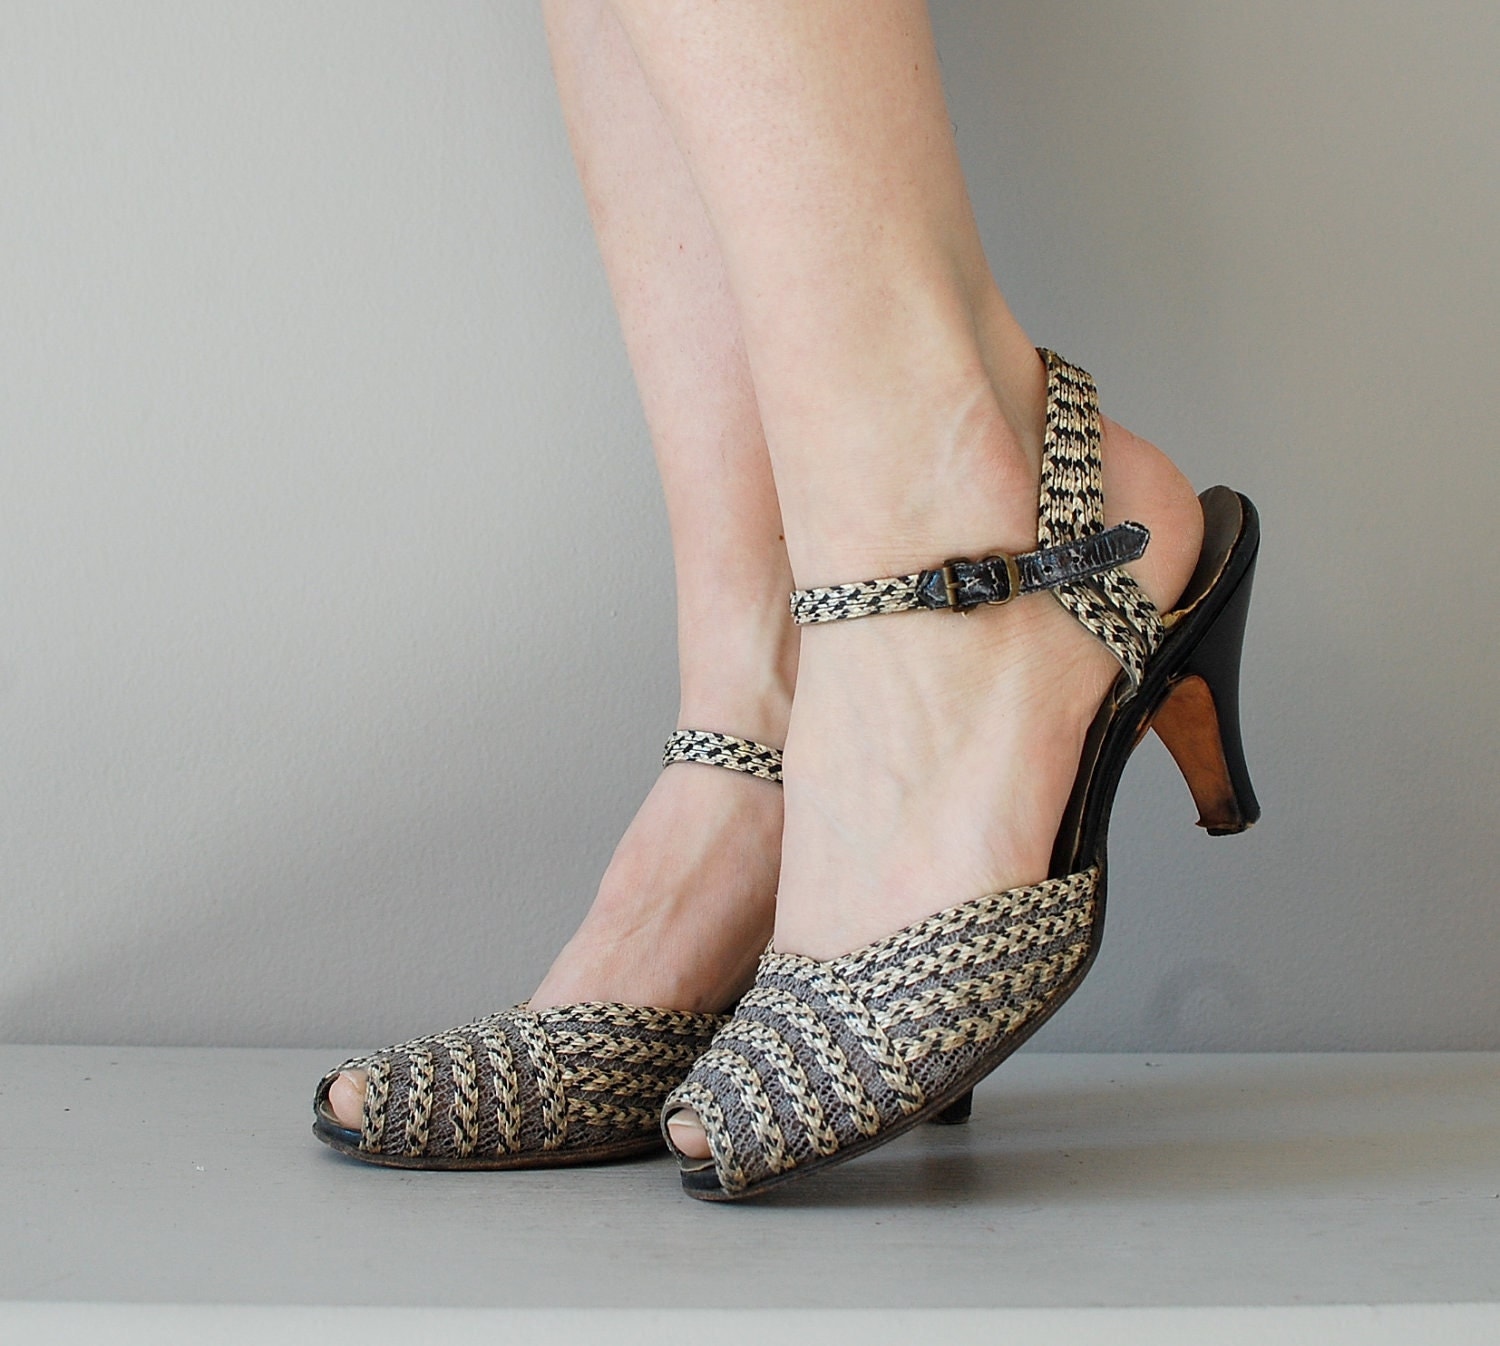 50s shoes / 1950s heels / Woven Fleck heels by DearGolden on Etsy